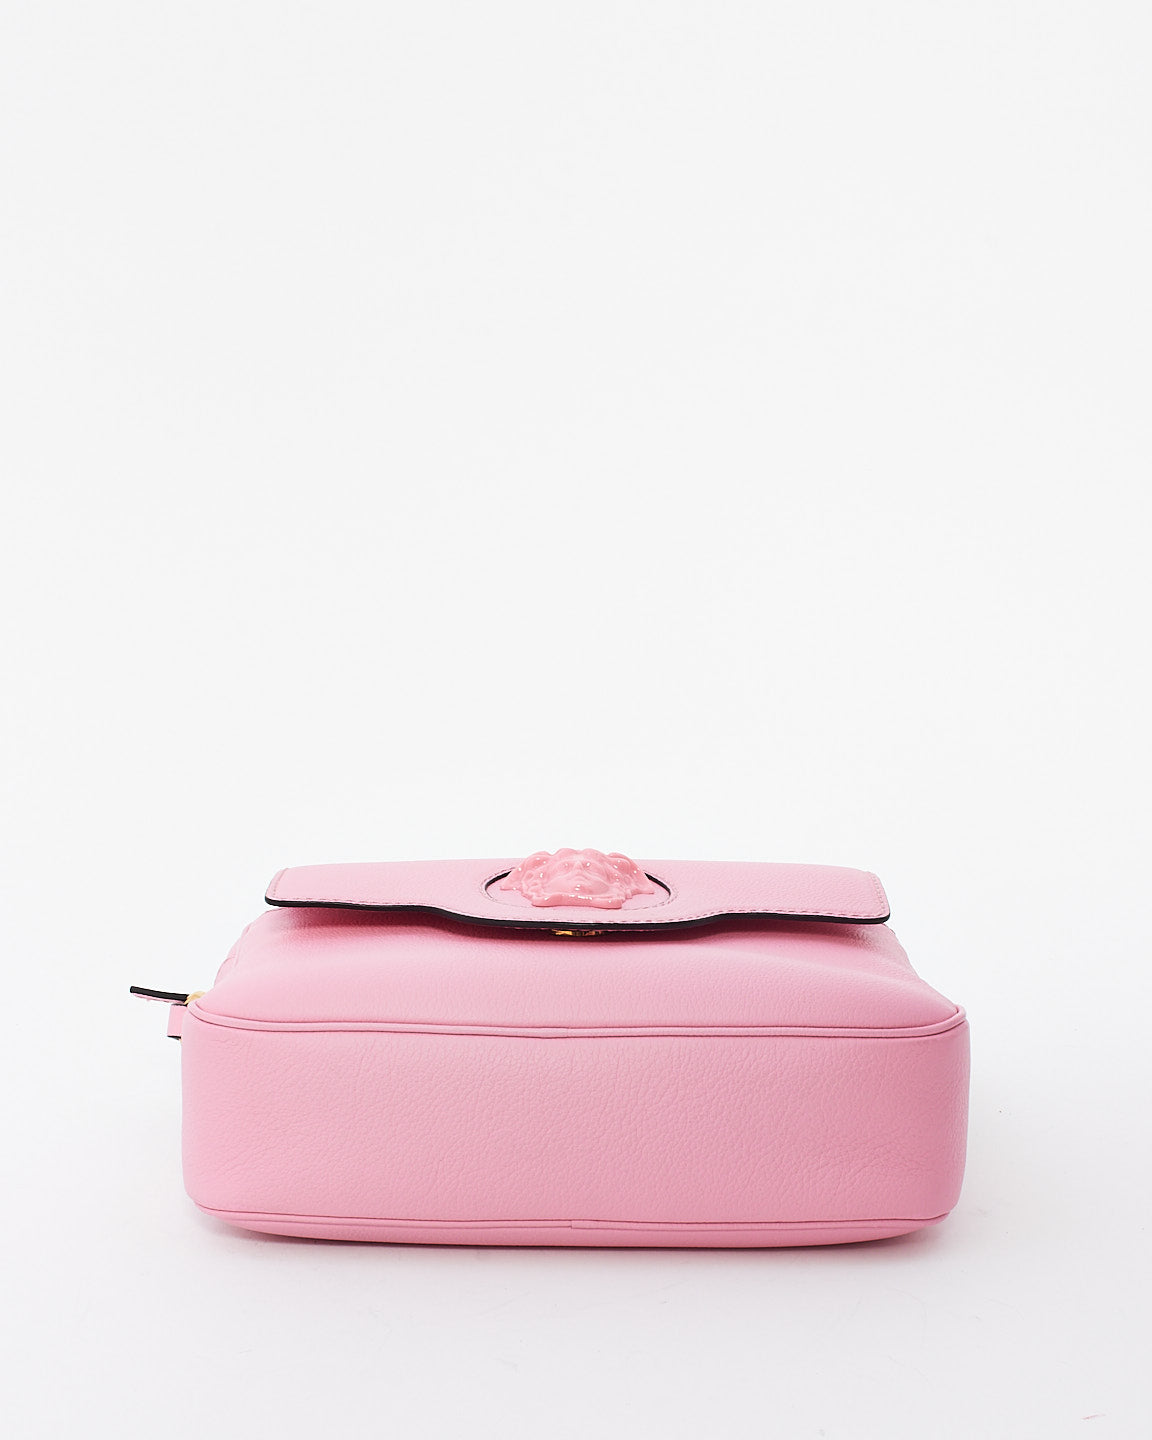 Versace Pink Leather Medusa Camera Bag